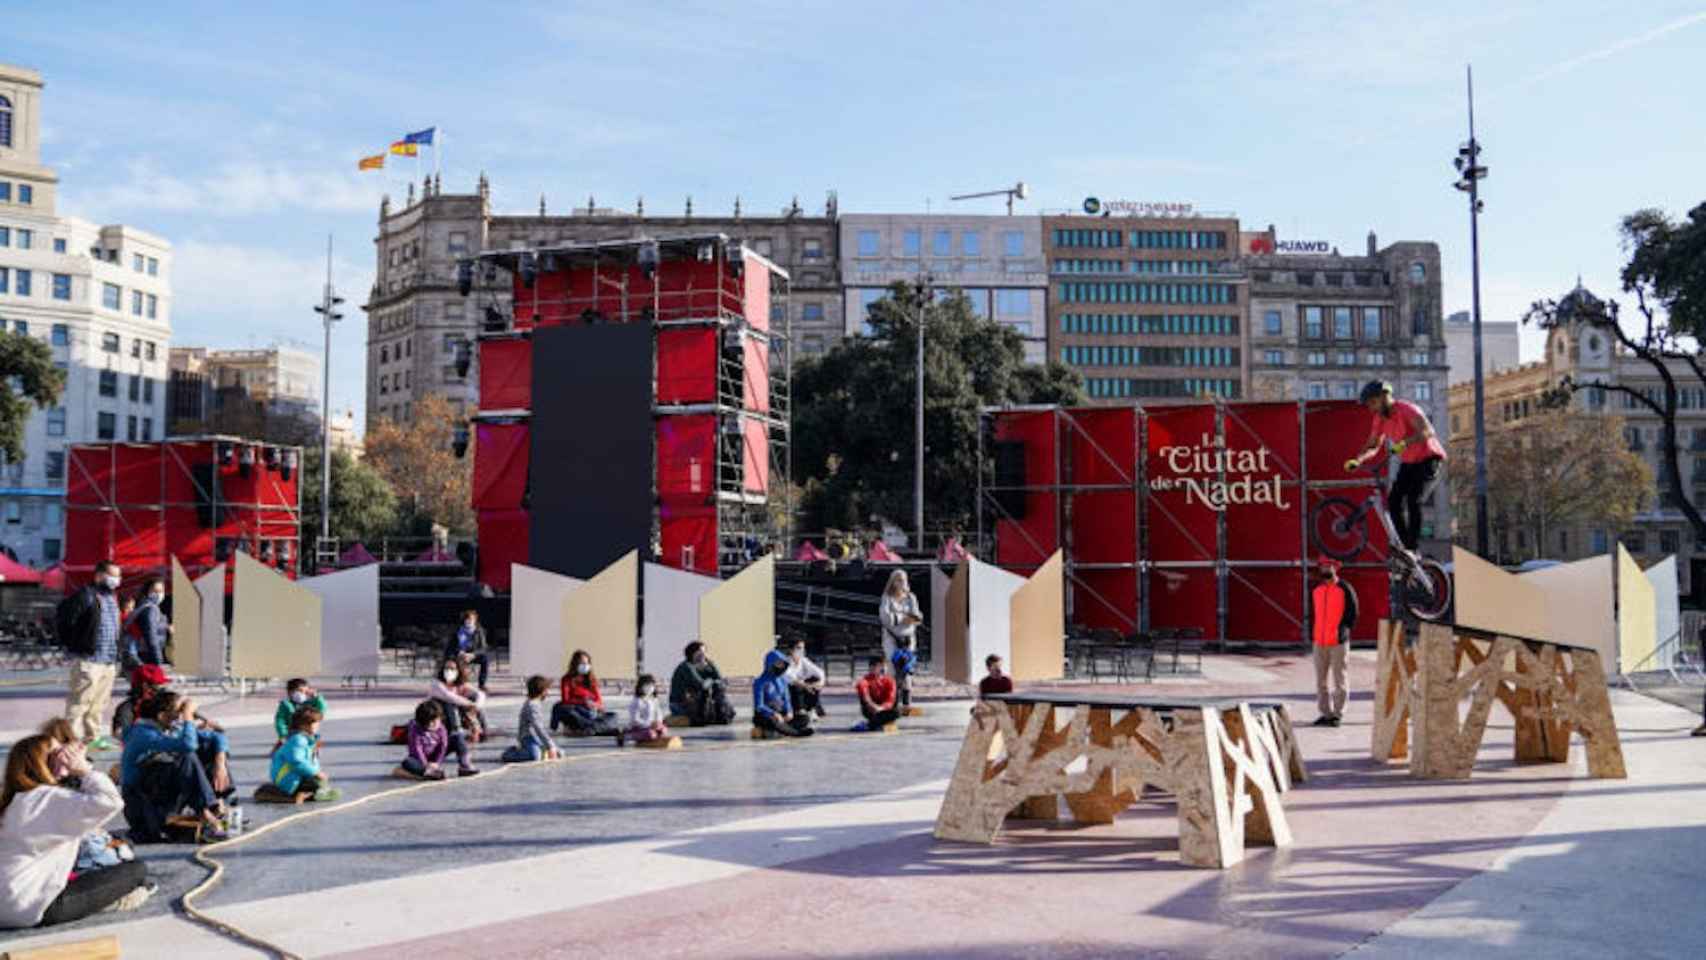 El Festival de Nadal de 2020 en plaza Catalunya en una imagen de archivo / AYUNTAMIENTO DE BARCELONA